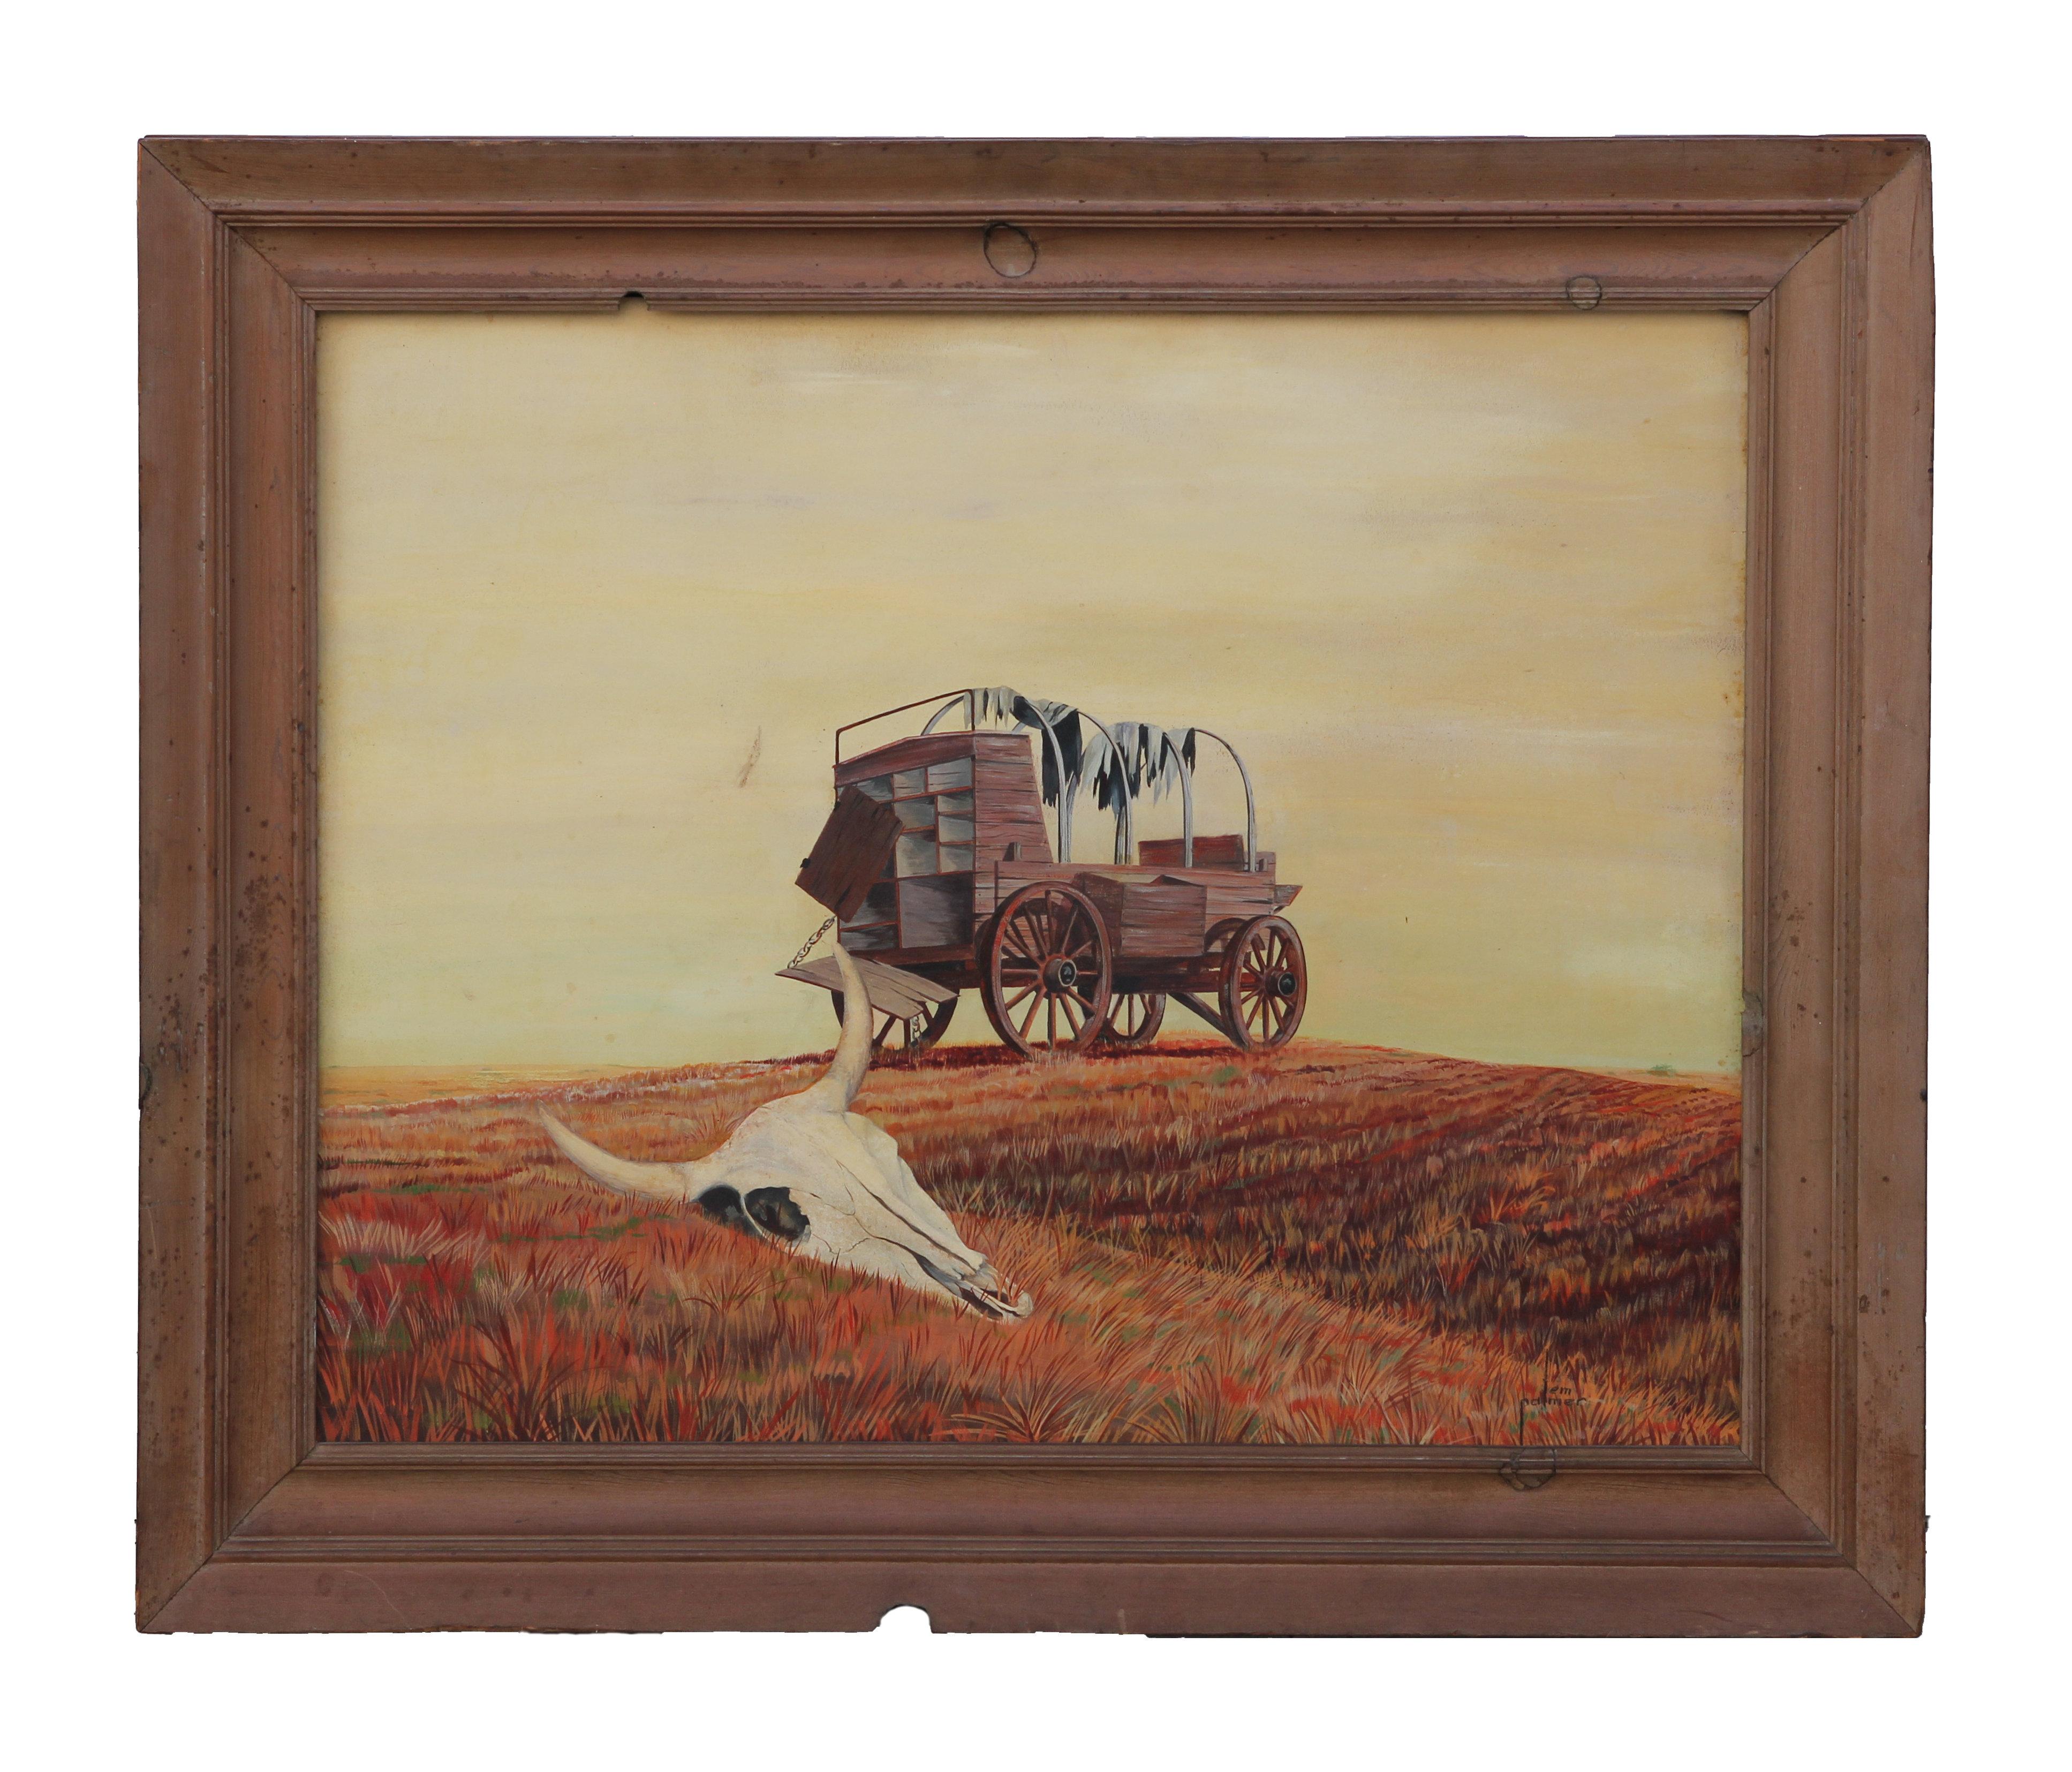 Lem Palmer Landscape Painting – Modernistische westliche Landschaft mit Wagon und Kuhkopf